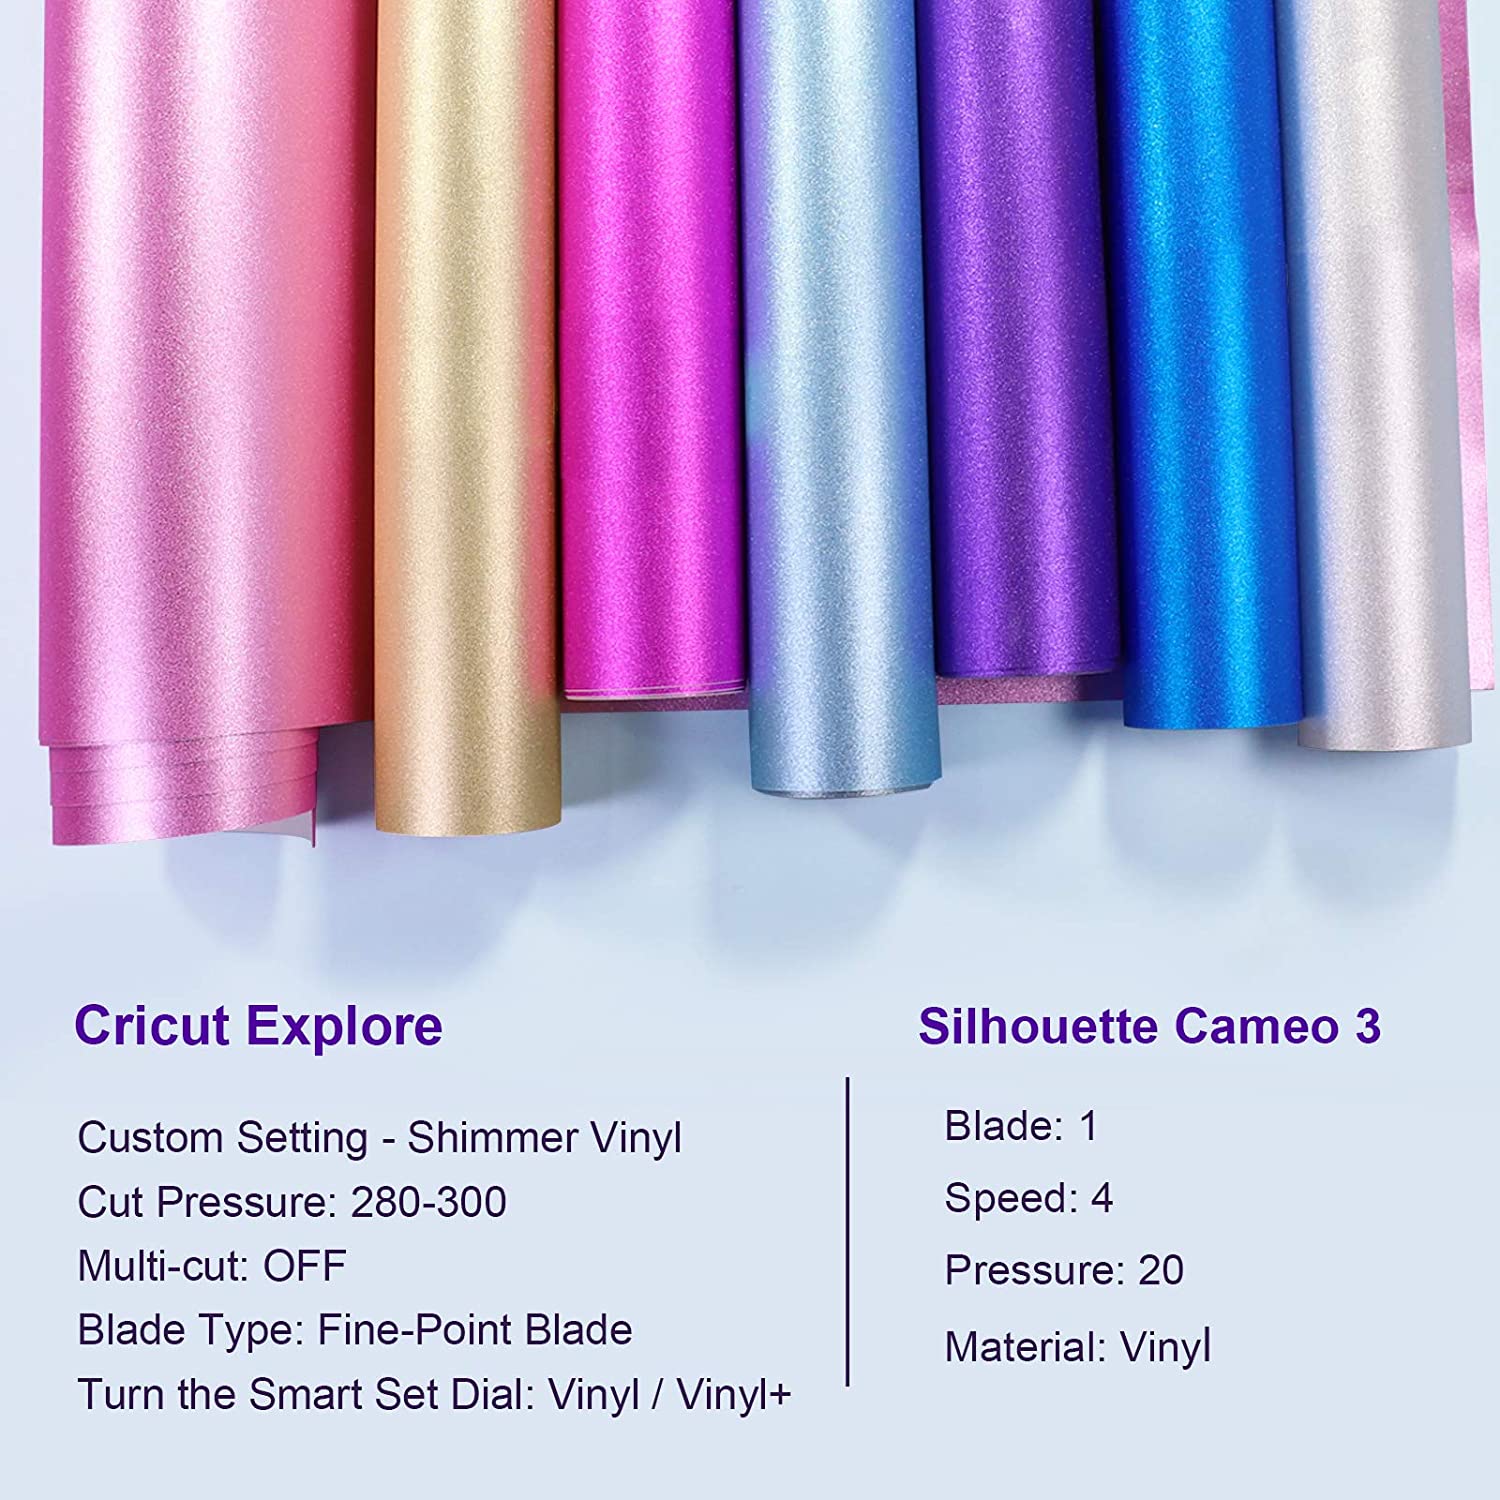 Cricut Color Changing Permanent Vinyl Rolls (Pink, Blue, Purple) Bundle